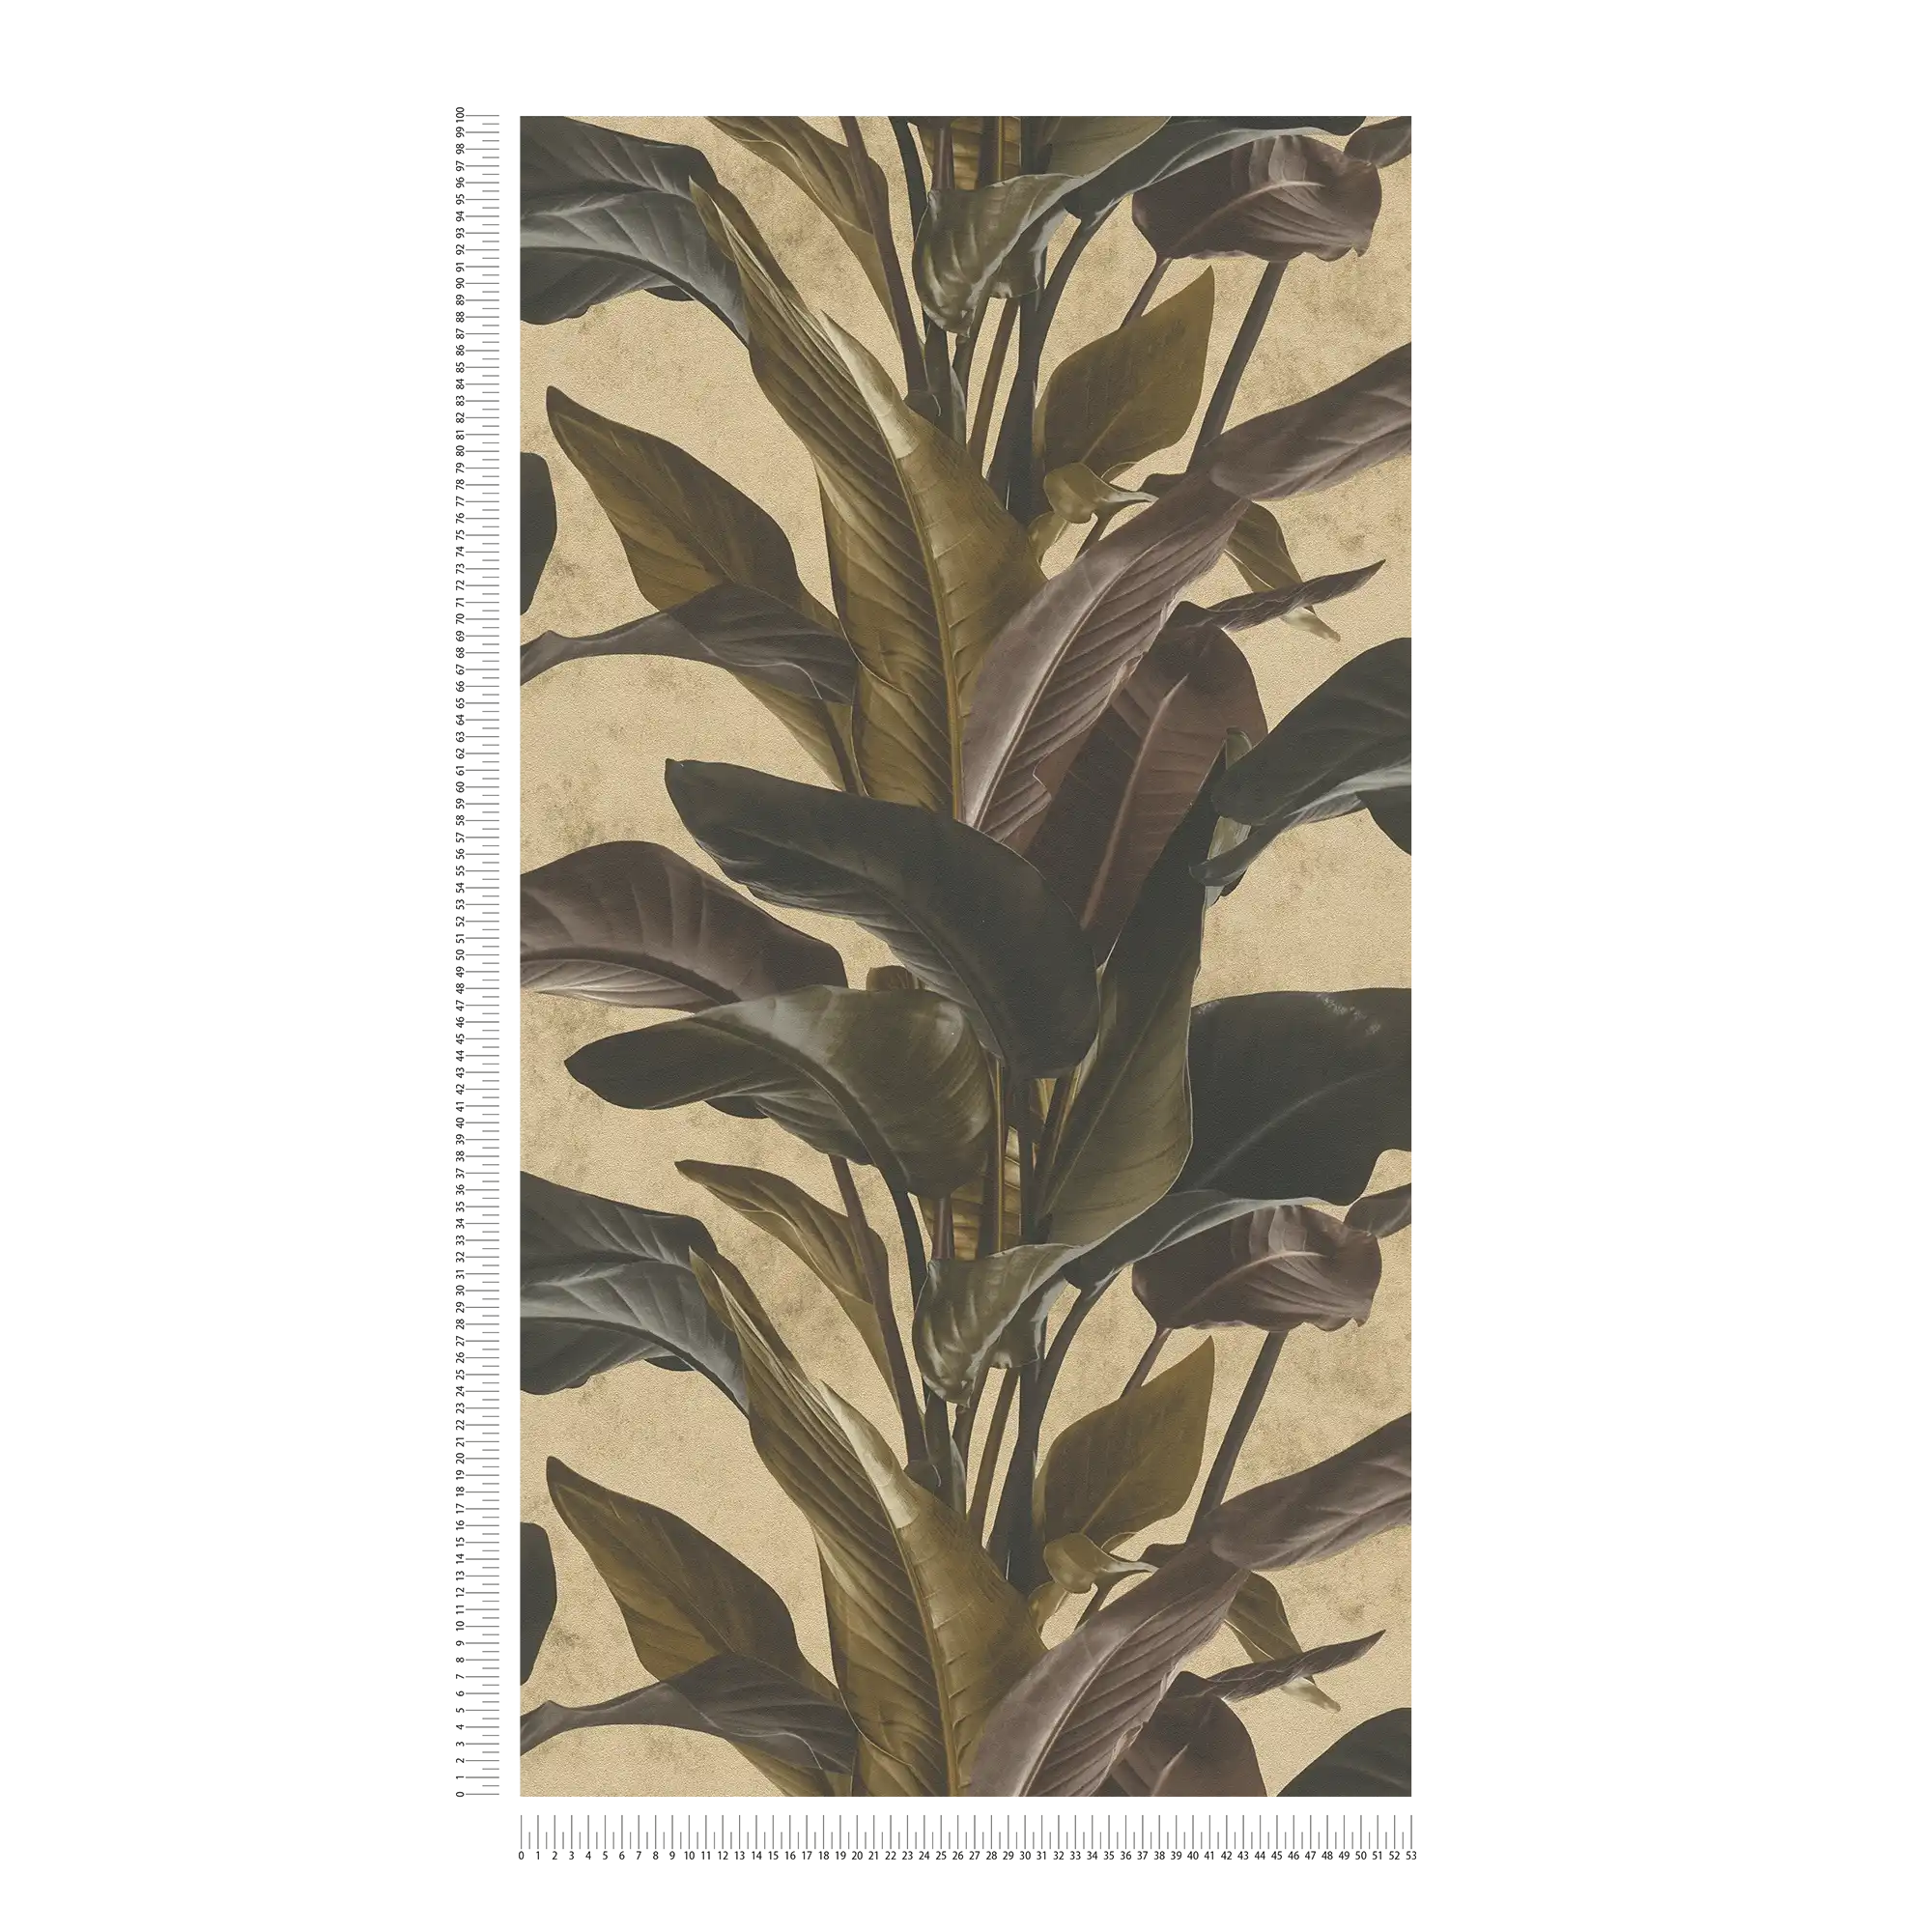             Papel pintado con diseño natural y brillo metálico - marrón, metálico, negro
        